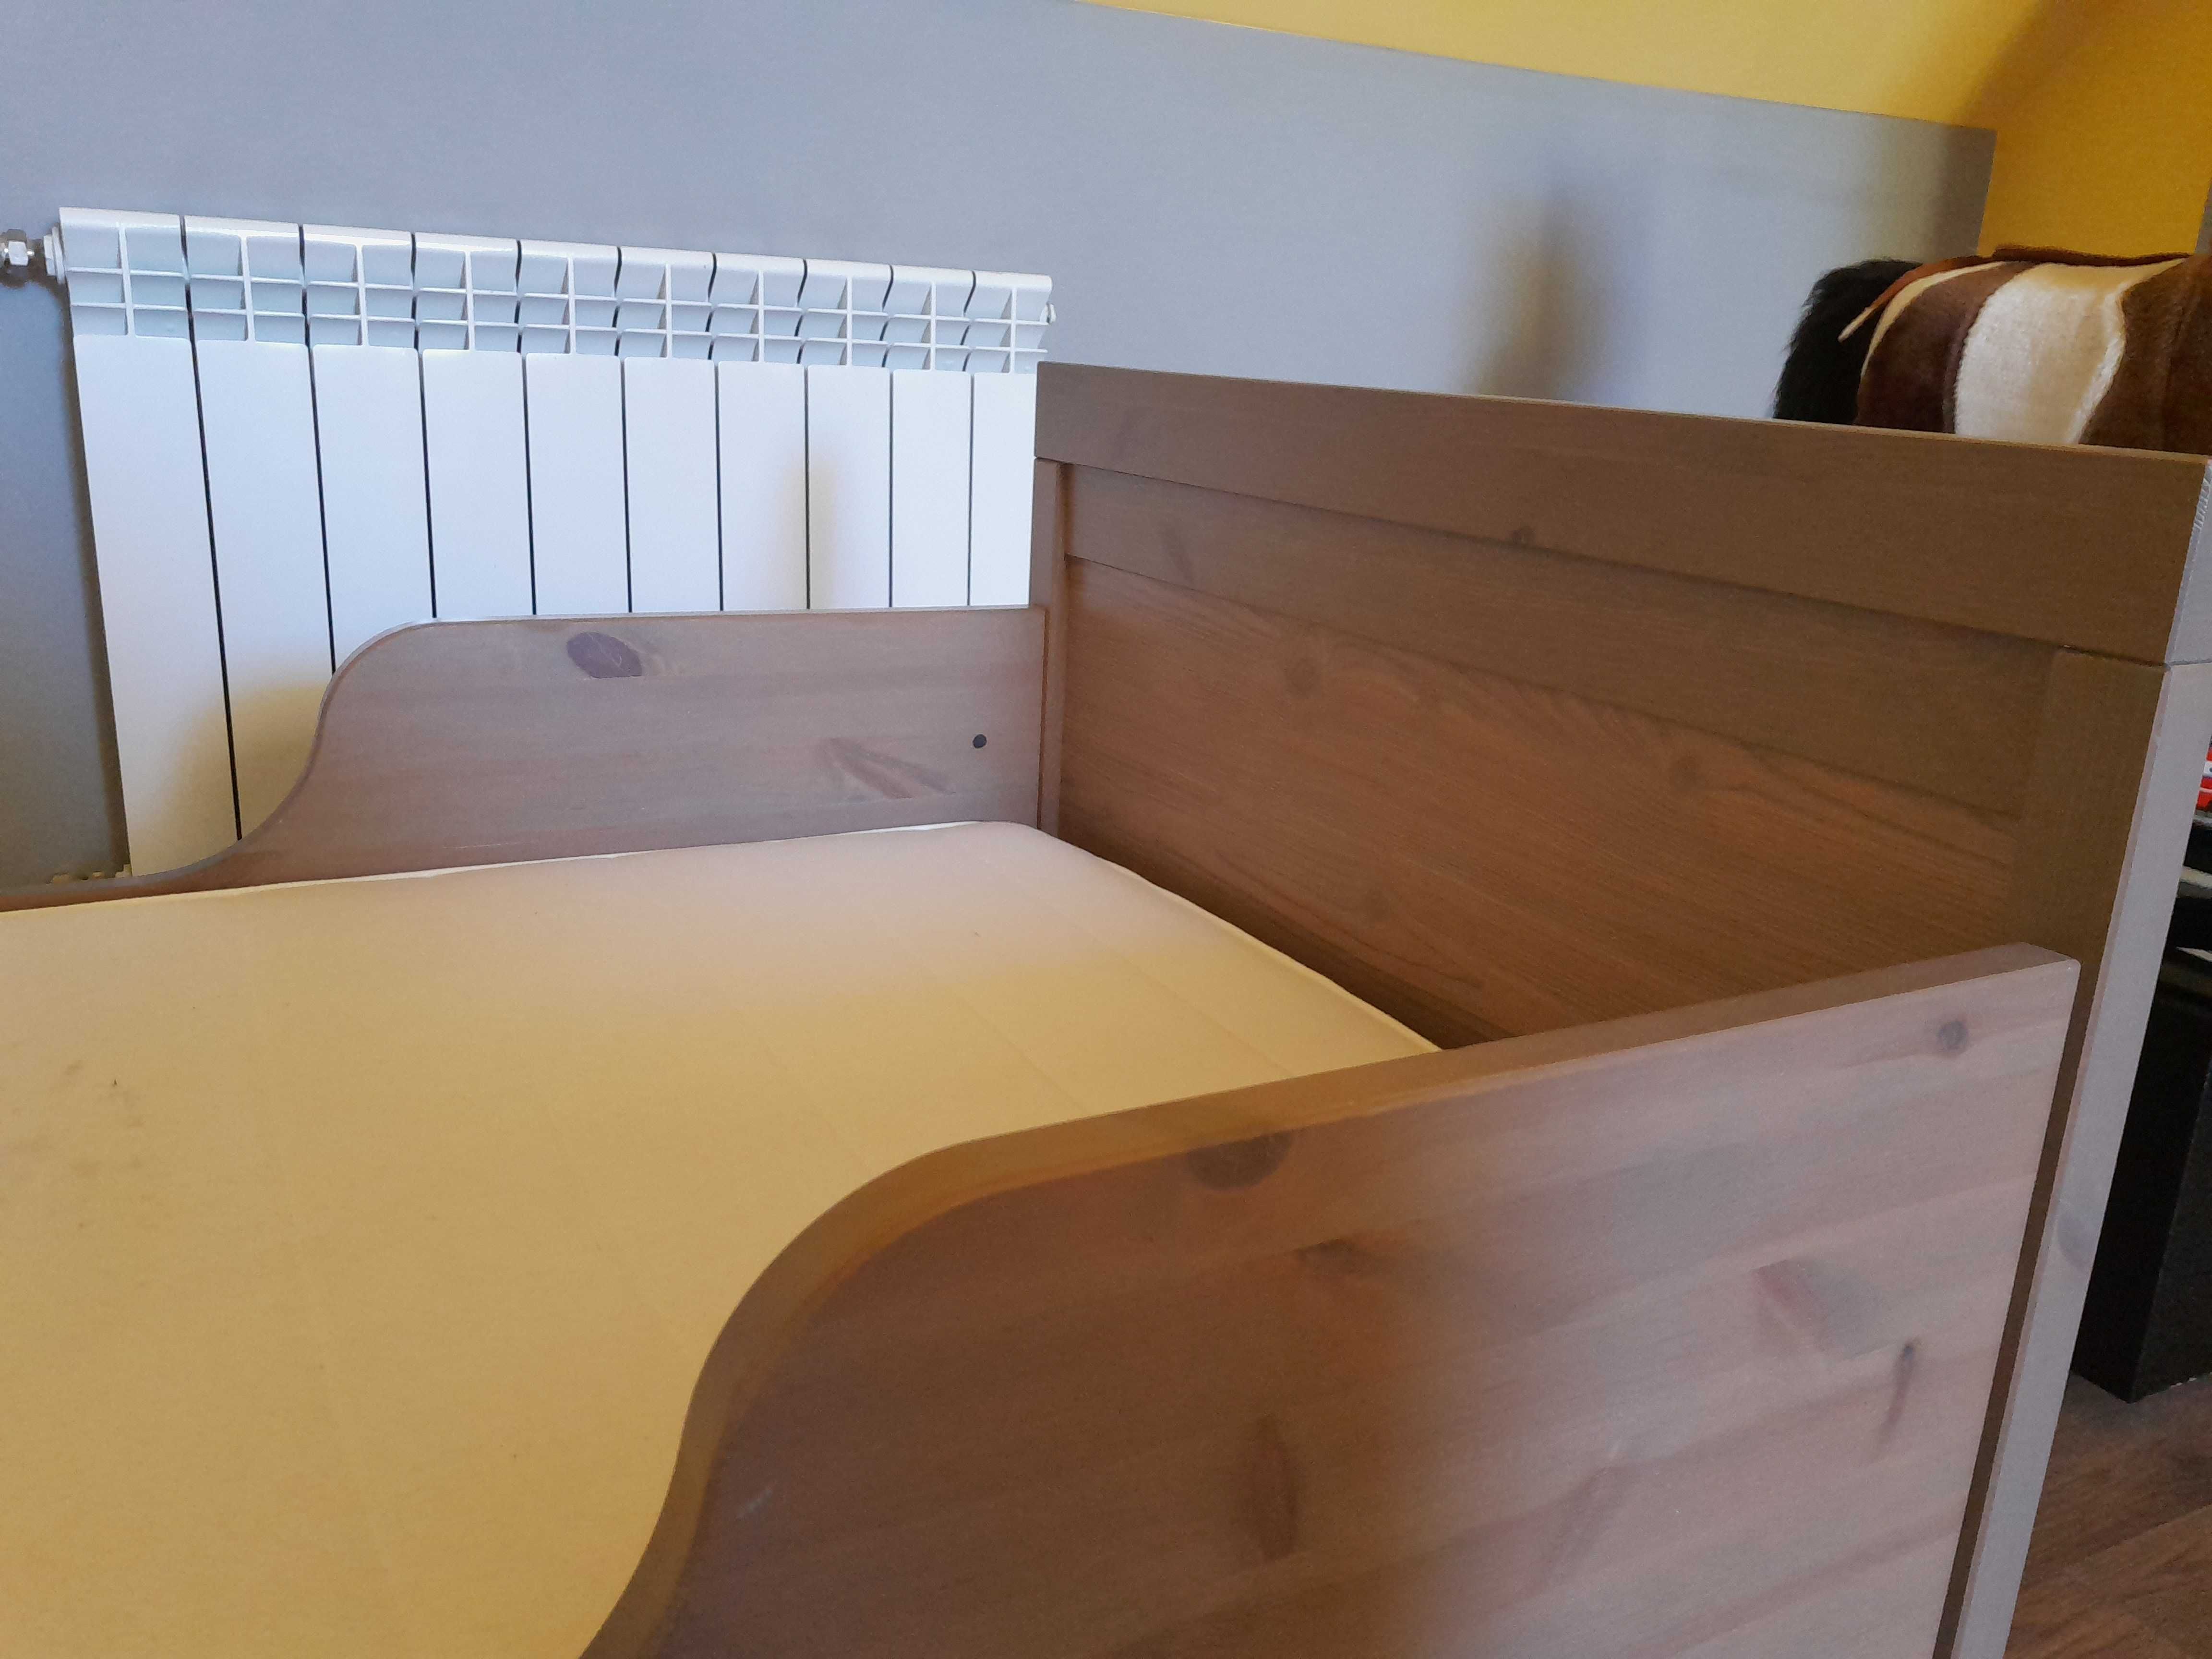 Łóżko sundvik z Ikea szare